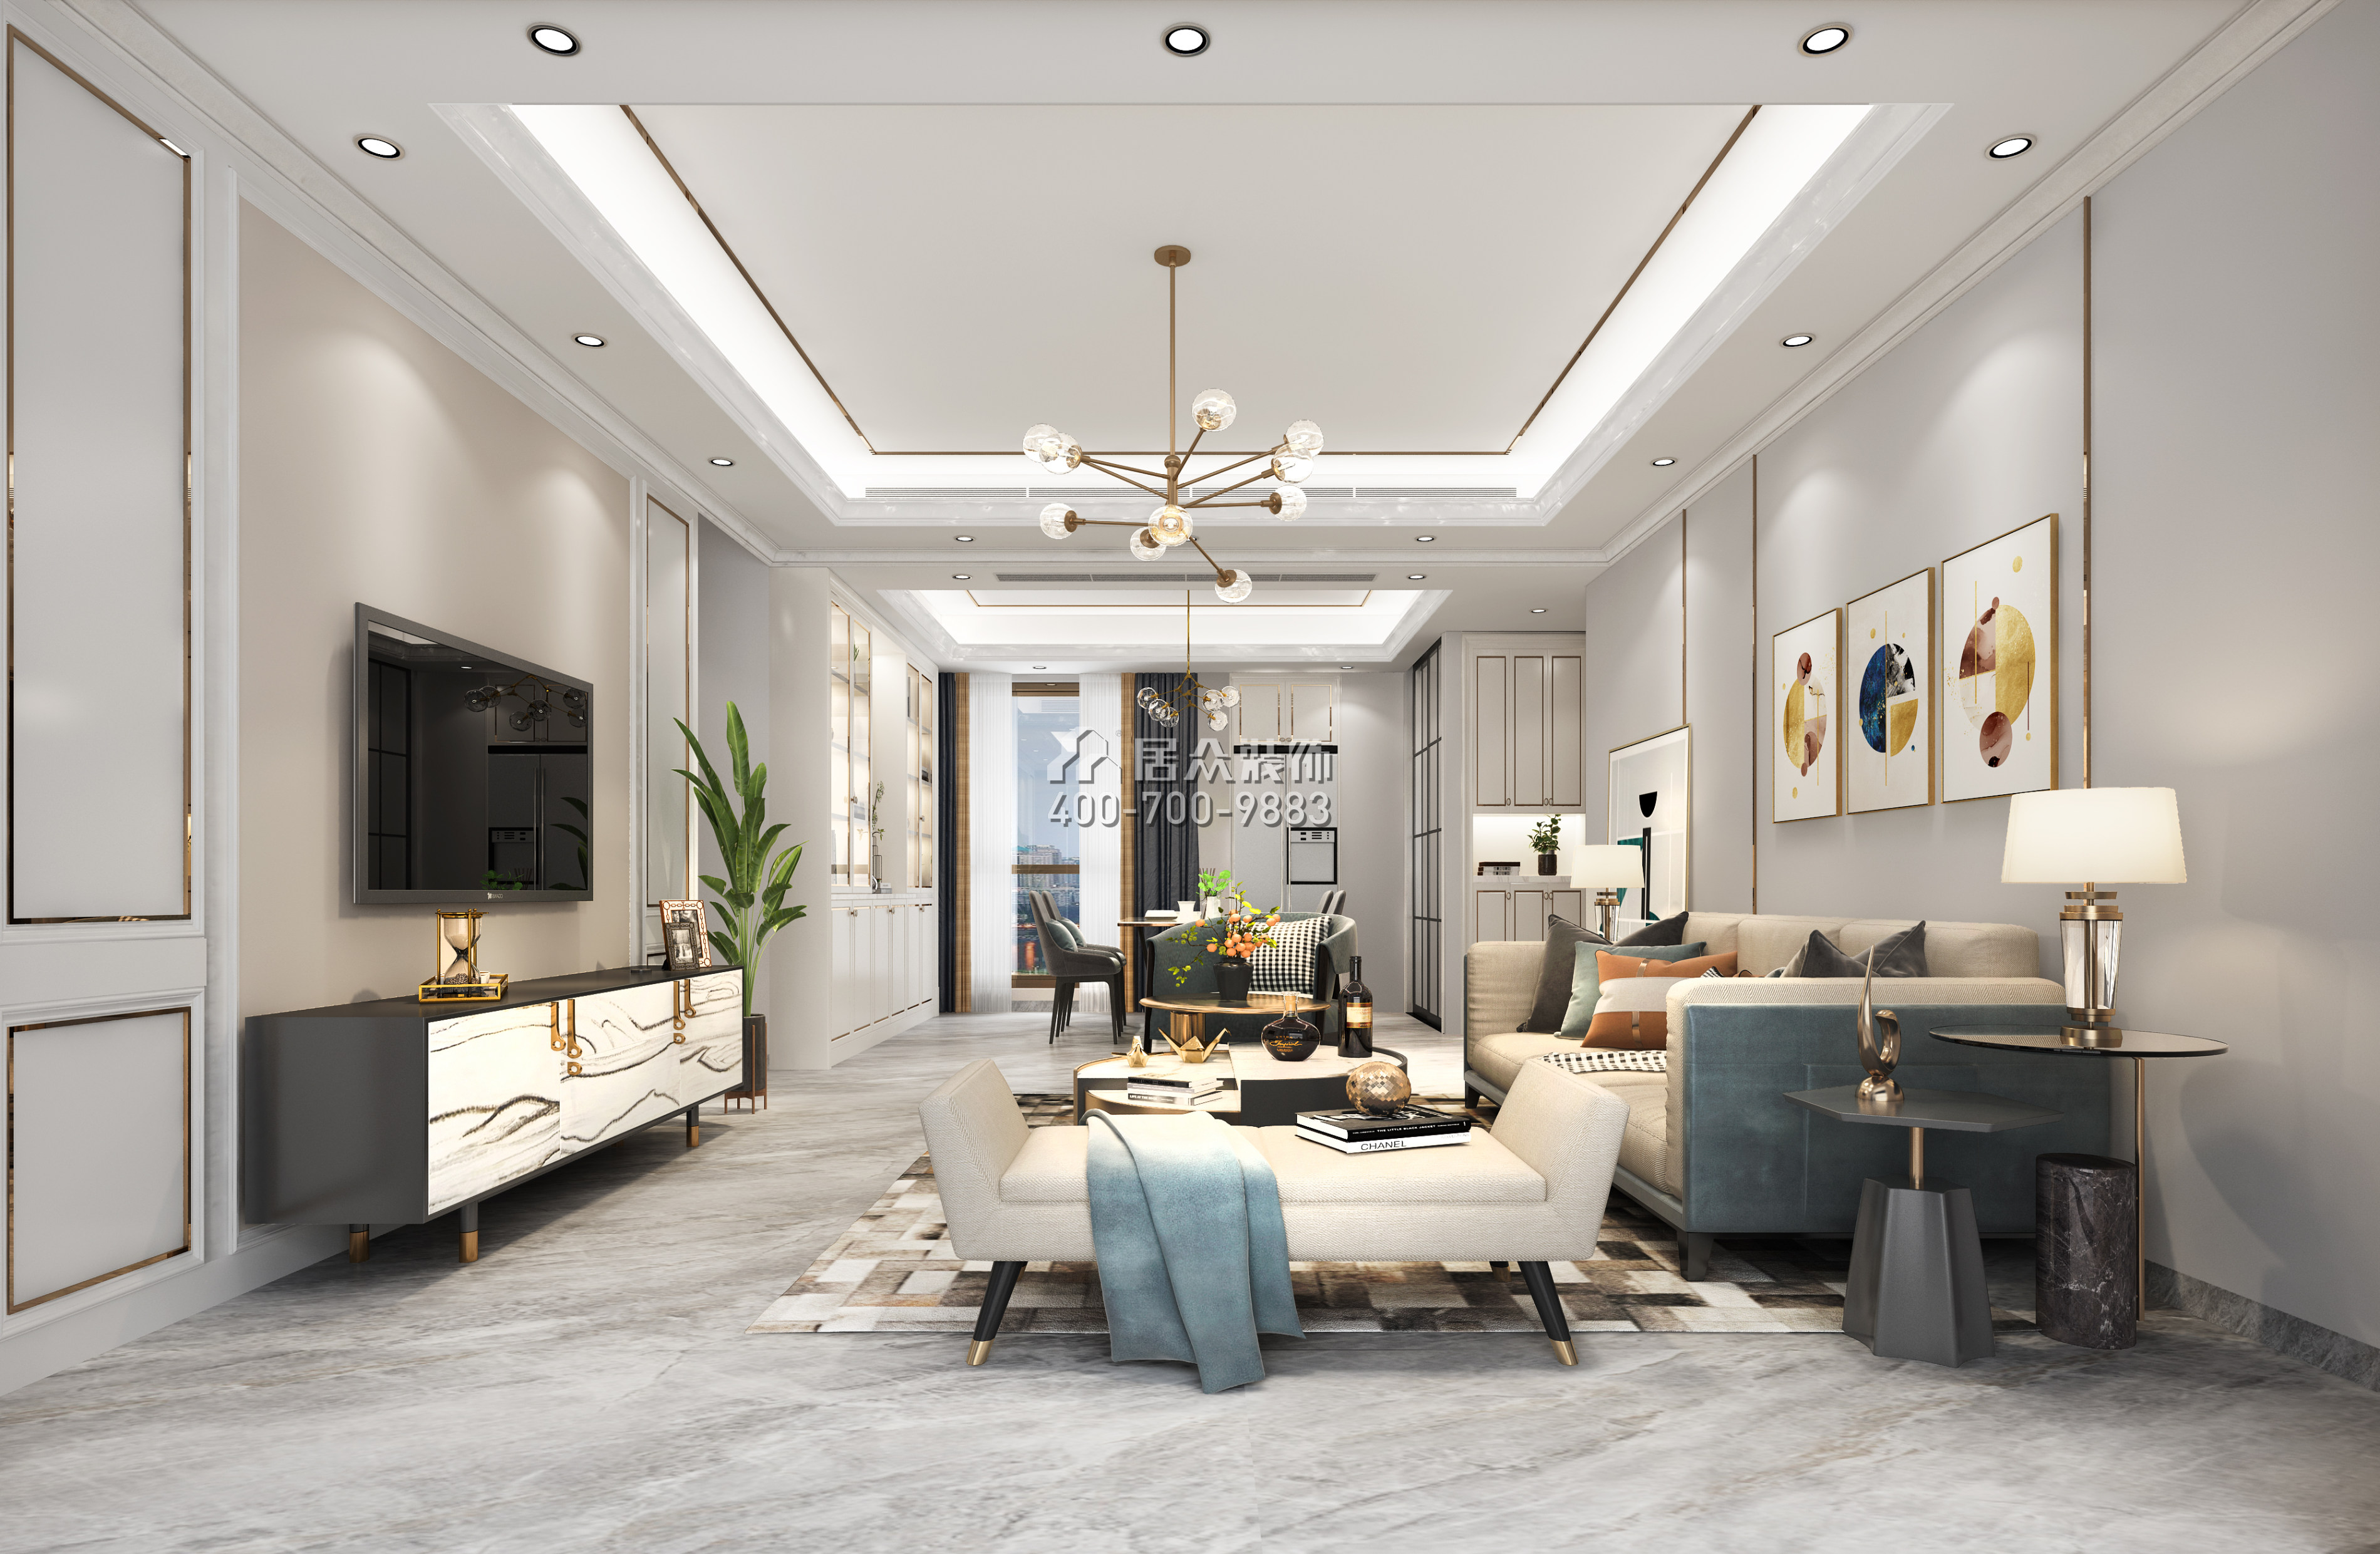 中颐海伦堡110平方米美式风格平层户型客厅装修效果图